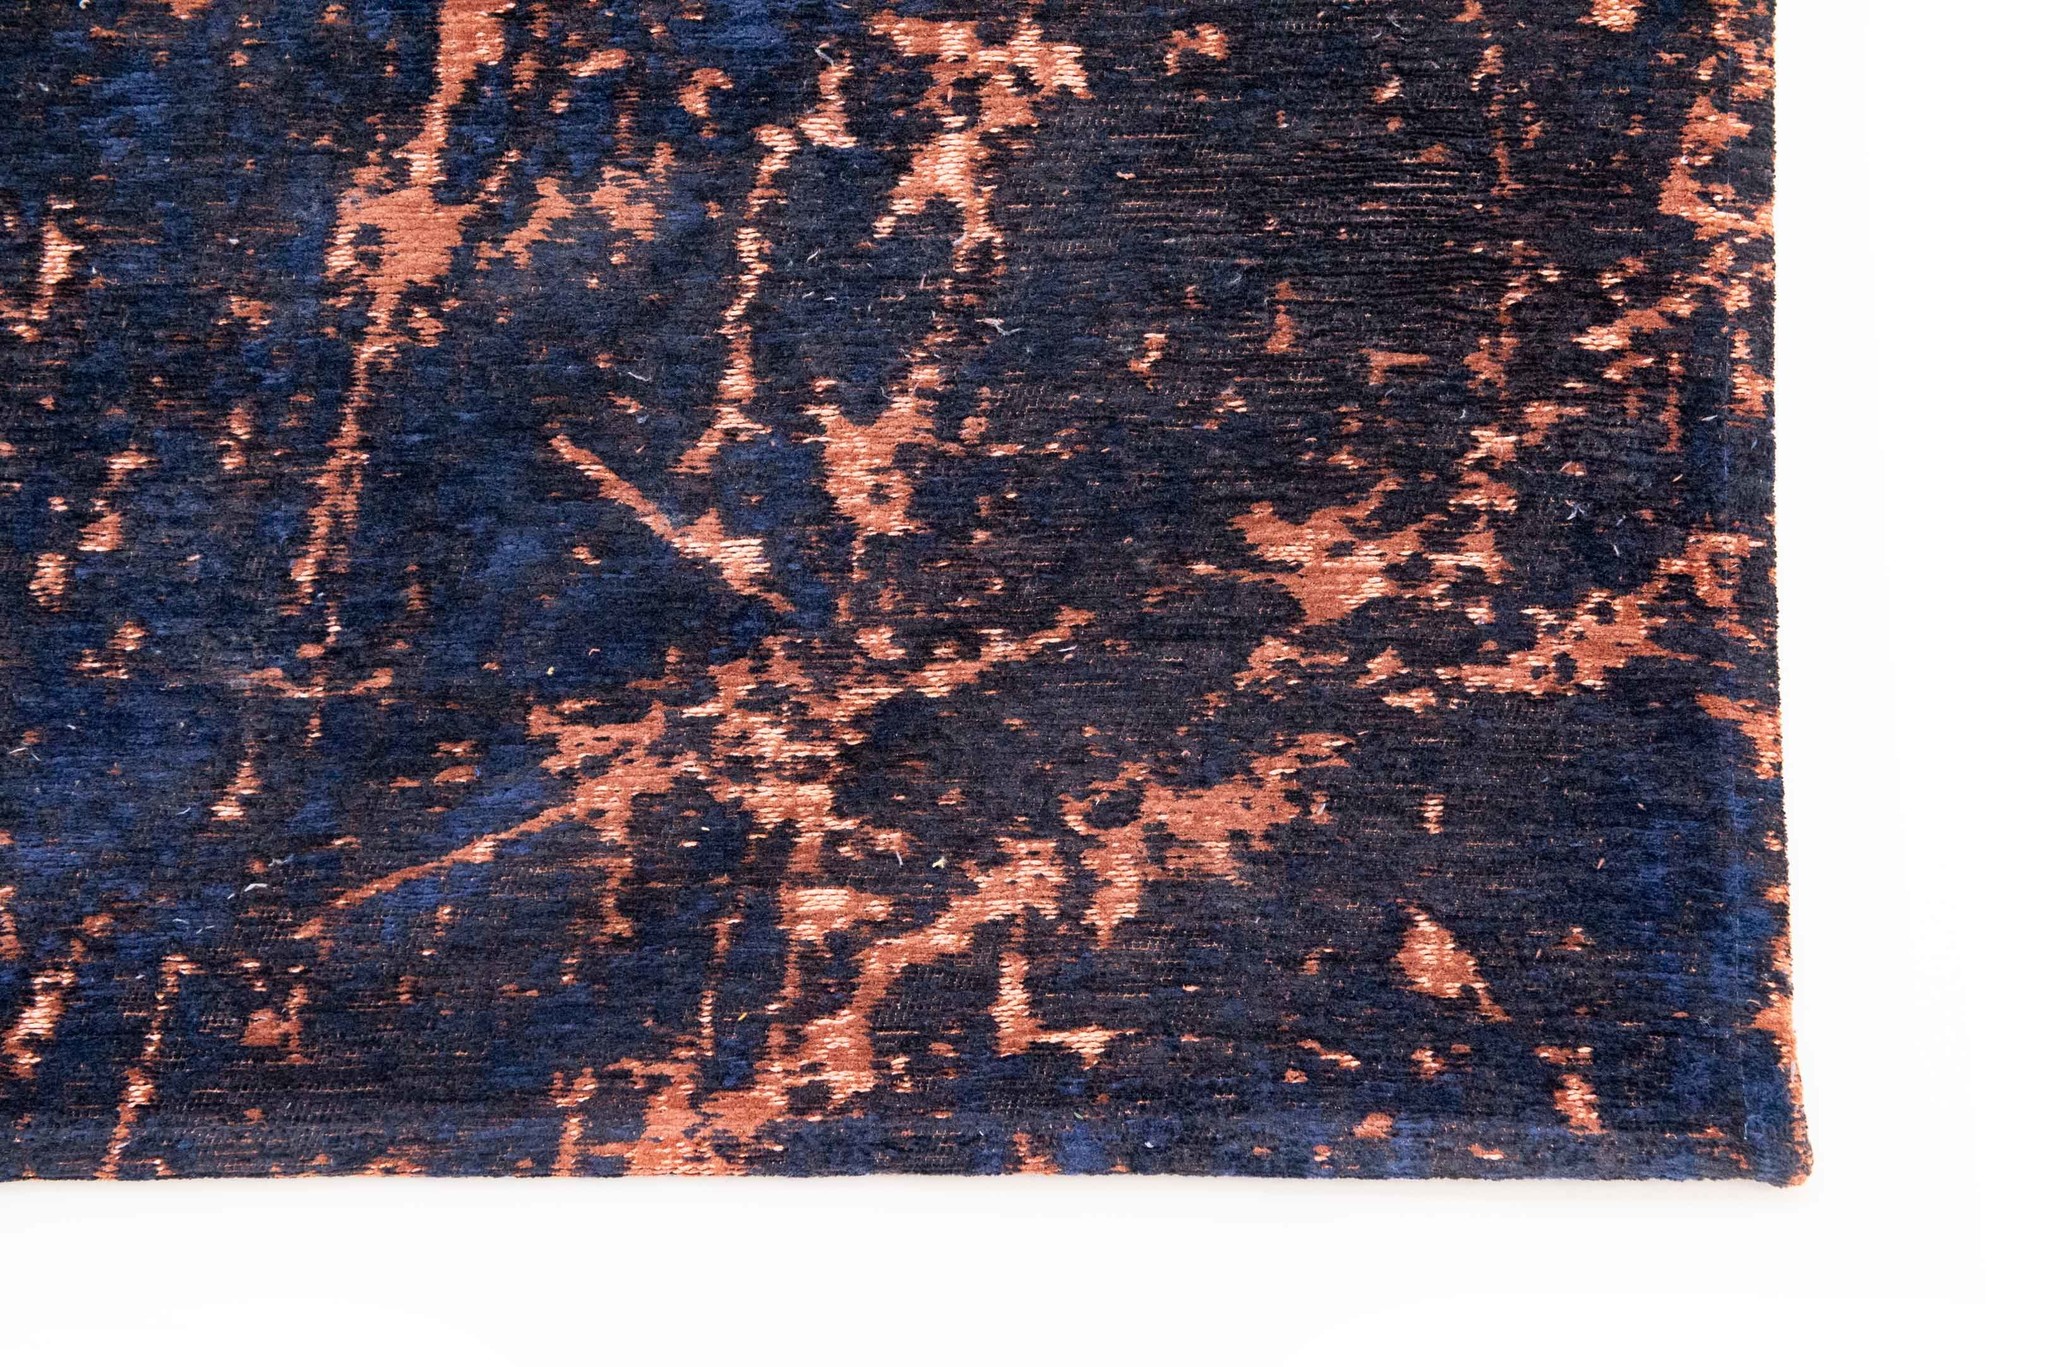 Art Black & Orange Belgian Rug ☞ Size: 2' 7" x 5' (80 x 150 cm)